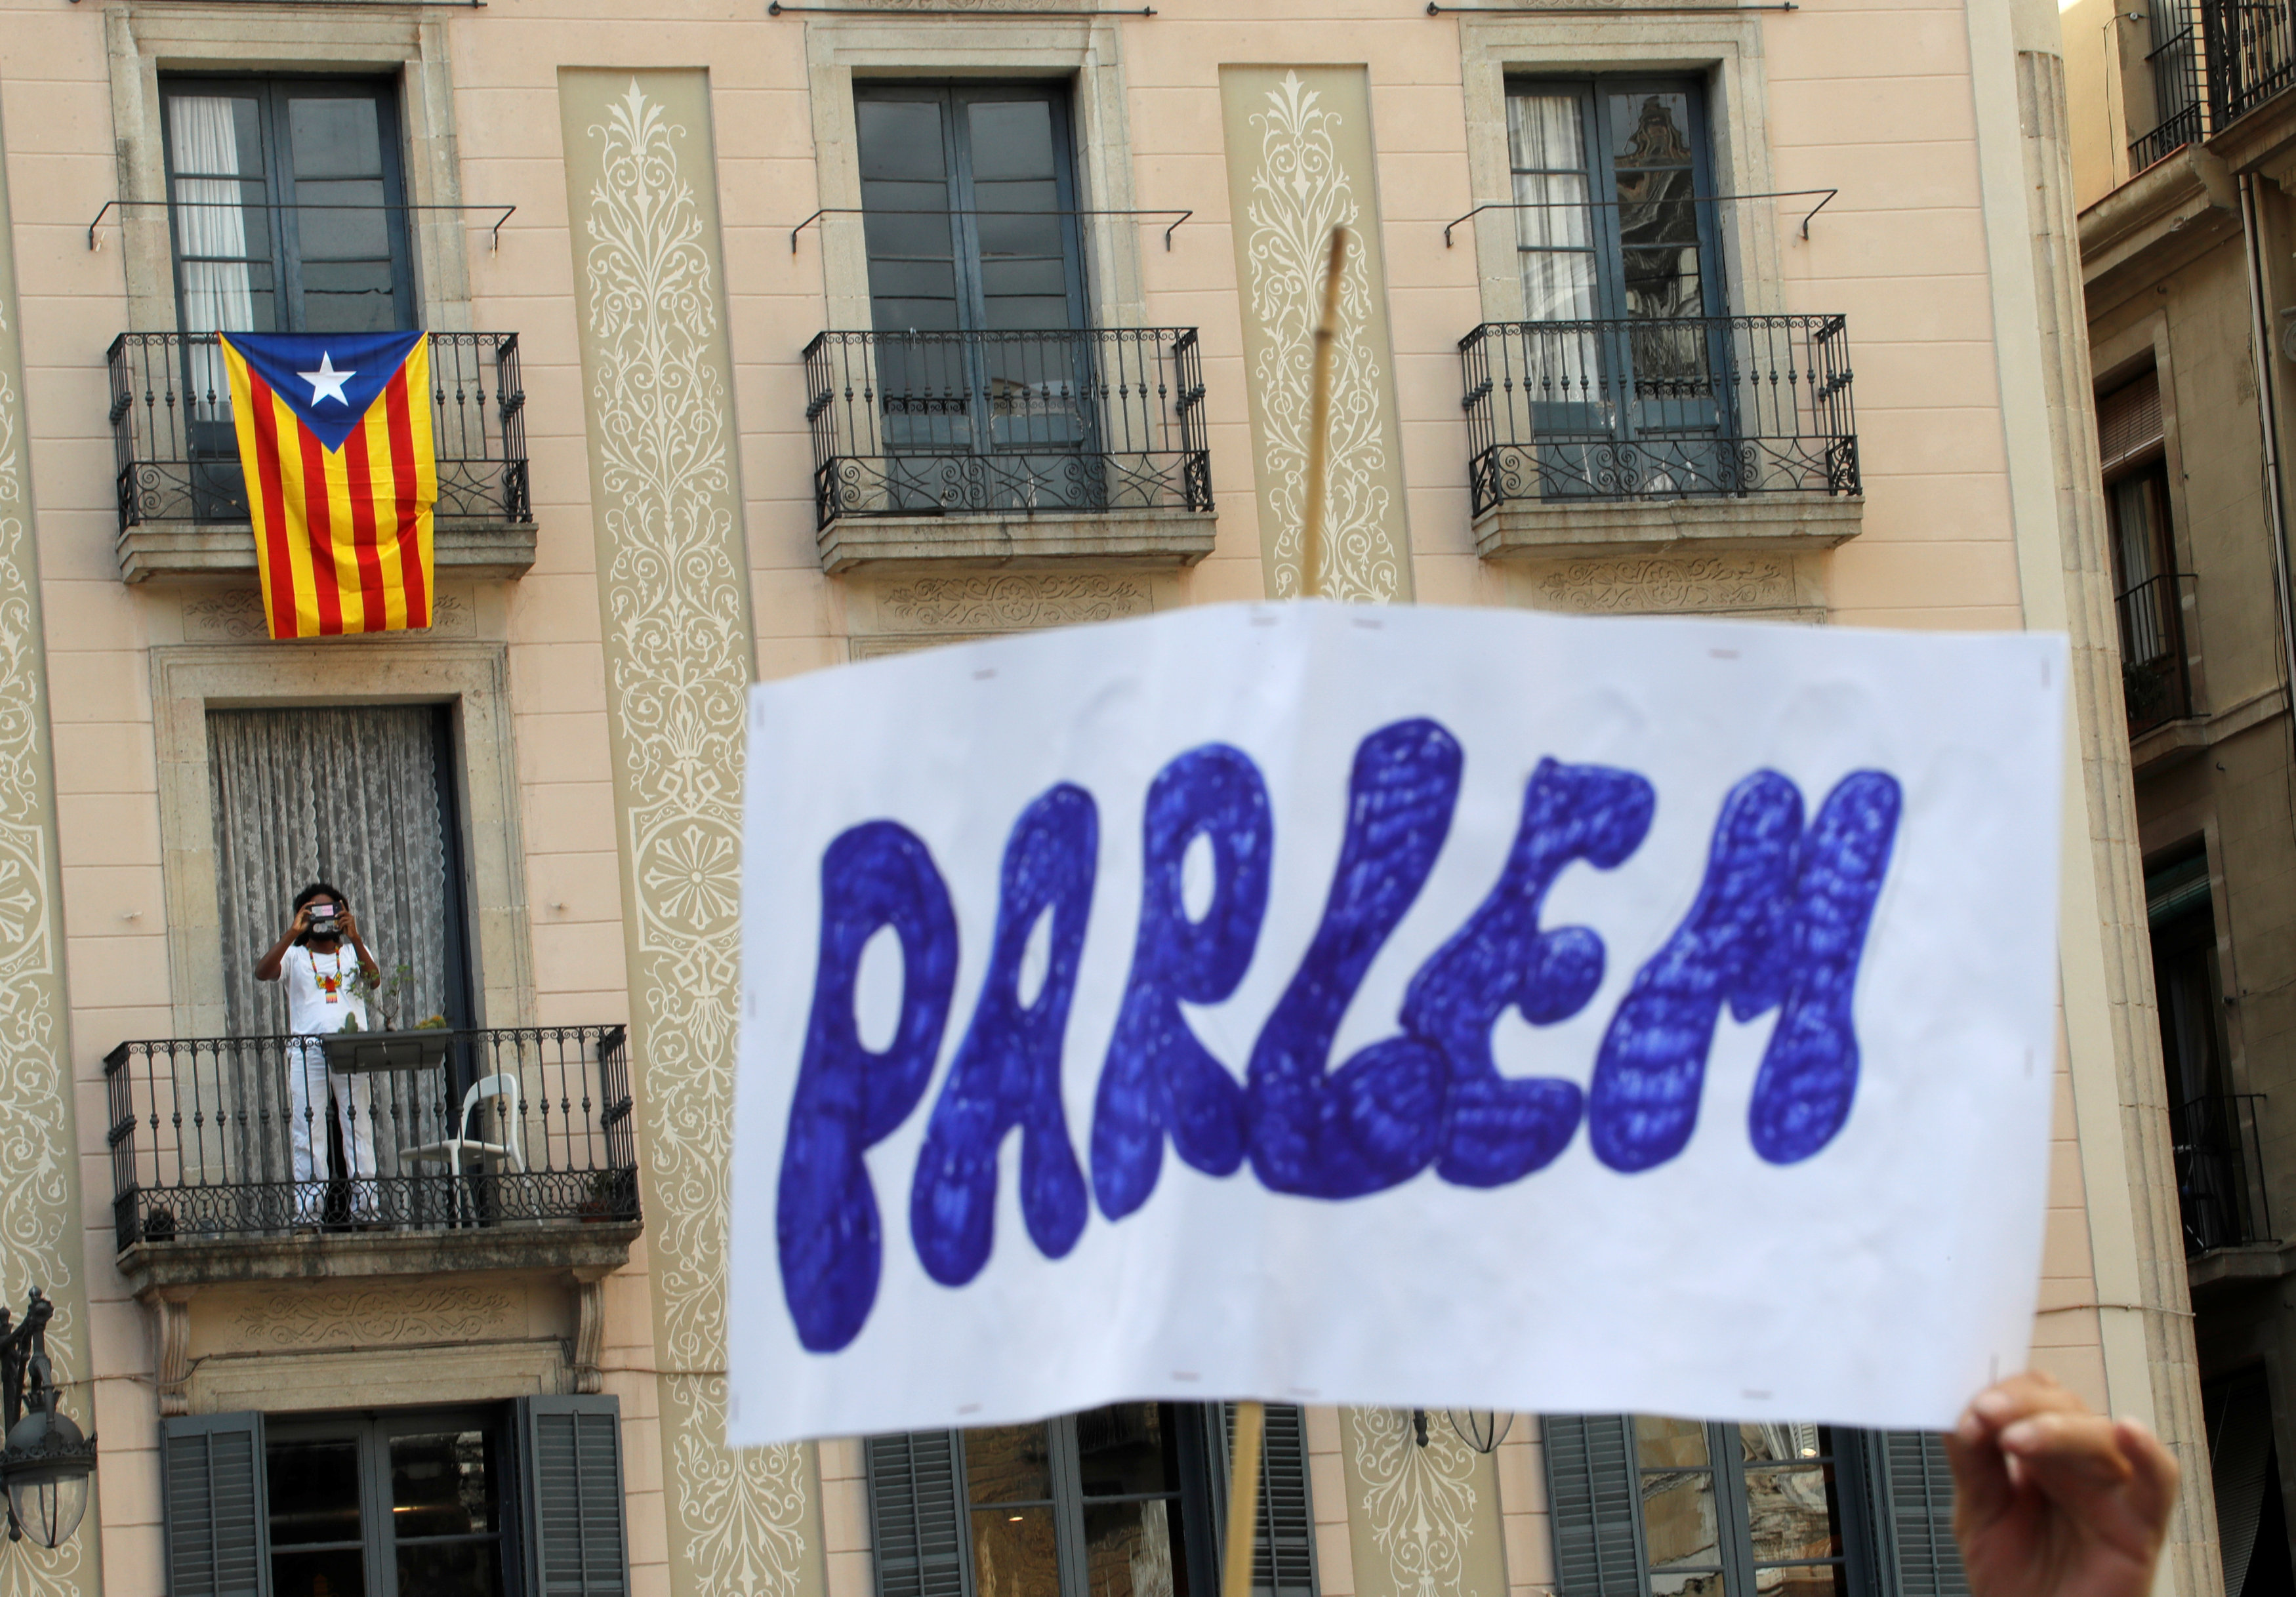 العلم الكتالونى معلقا على شرفات المنازل